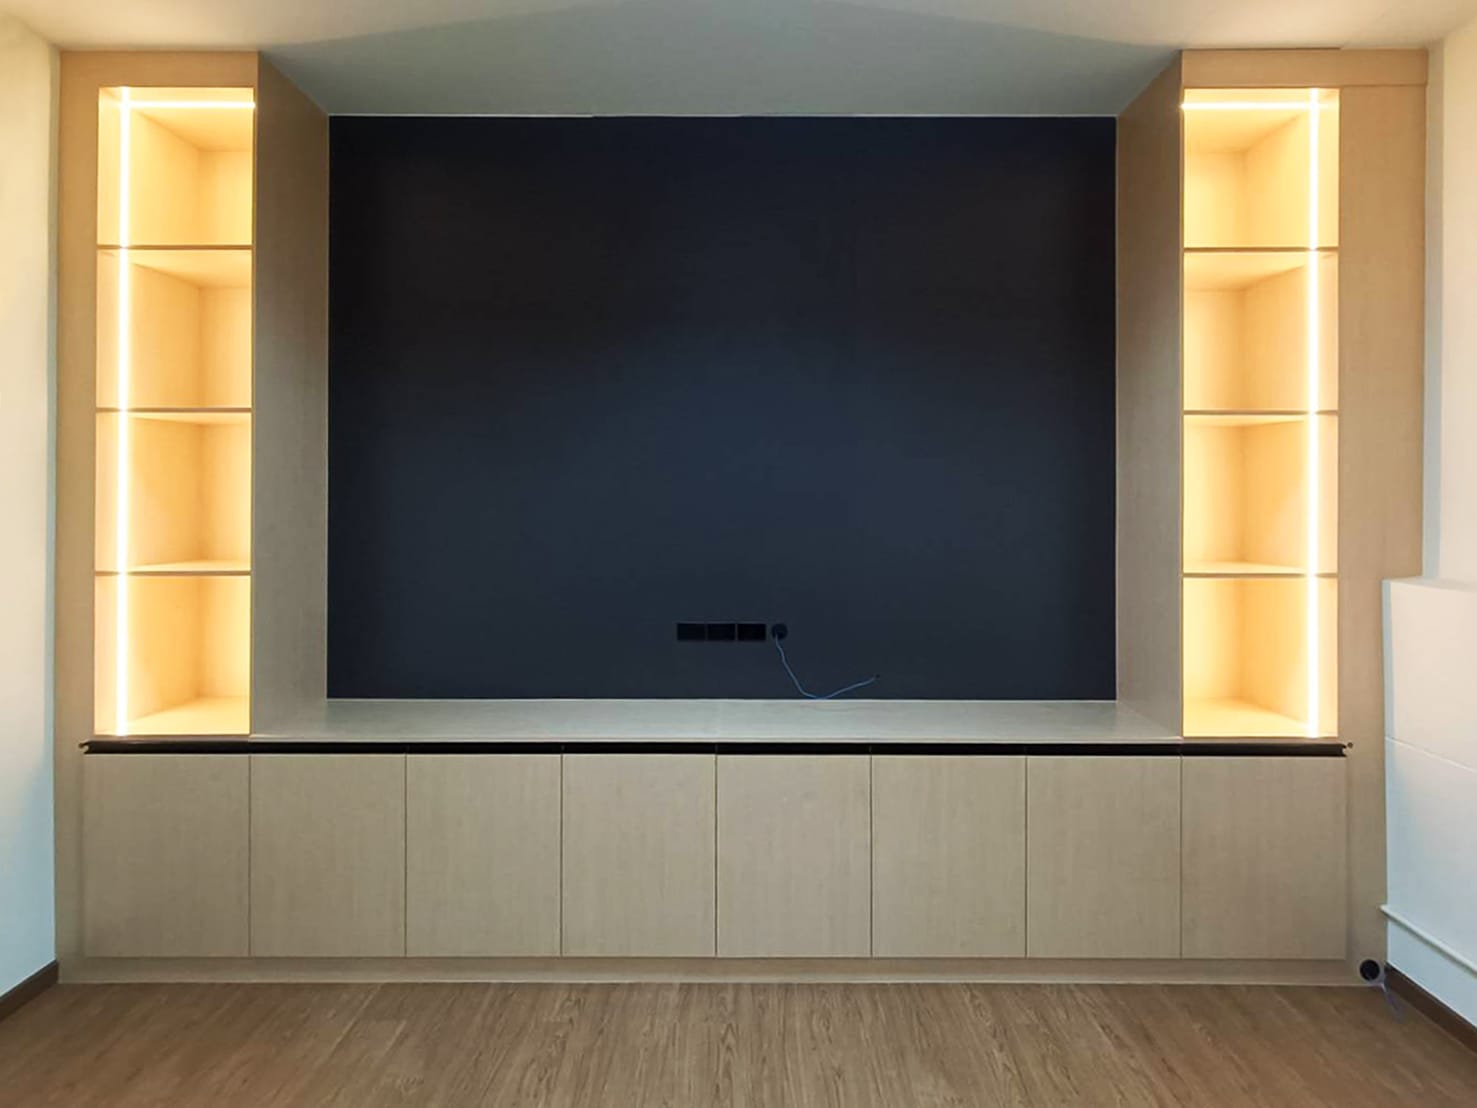 ตู้ TV Built-in โครงปาติเกิล กันชื้น เคลือบ Melamine สี Maple